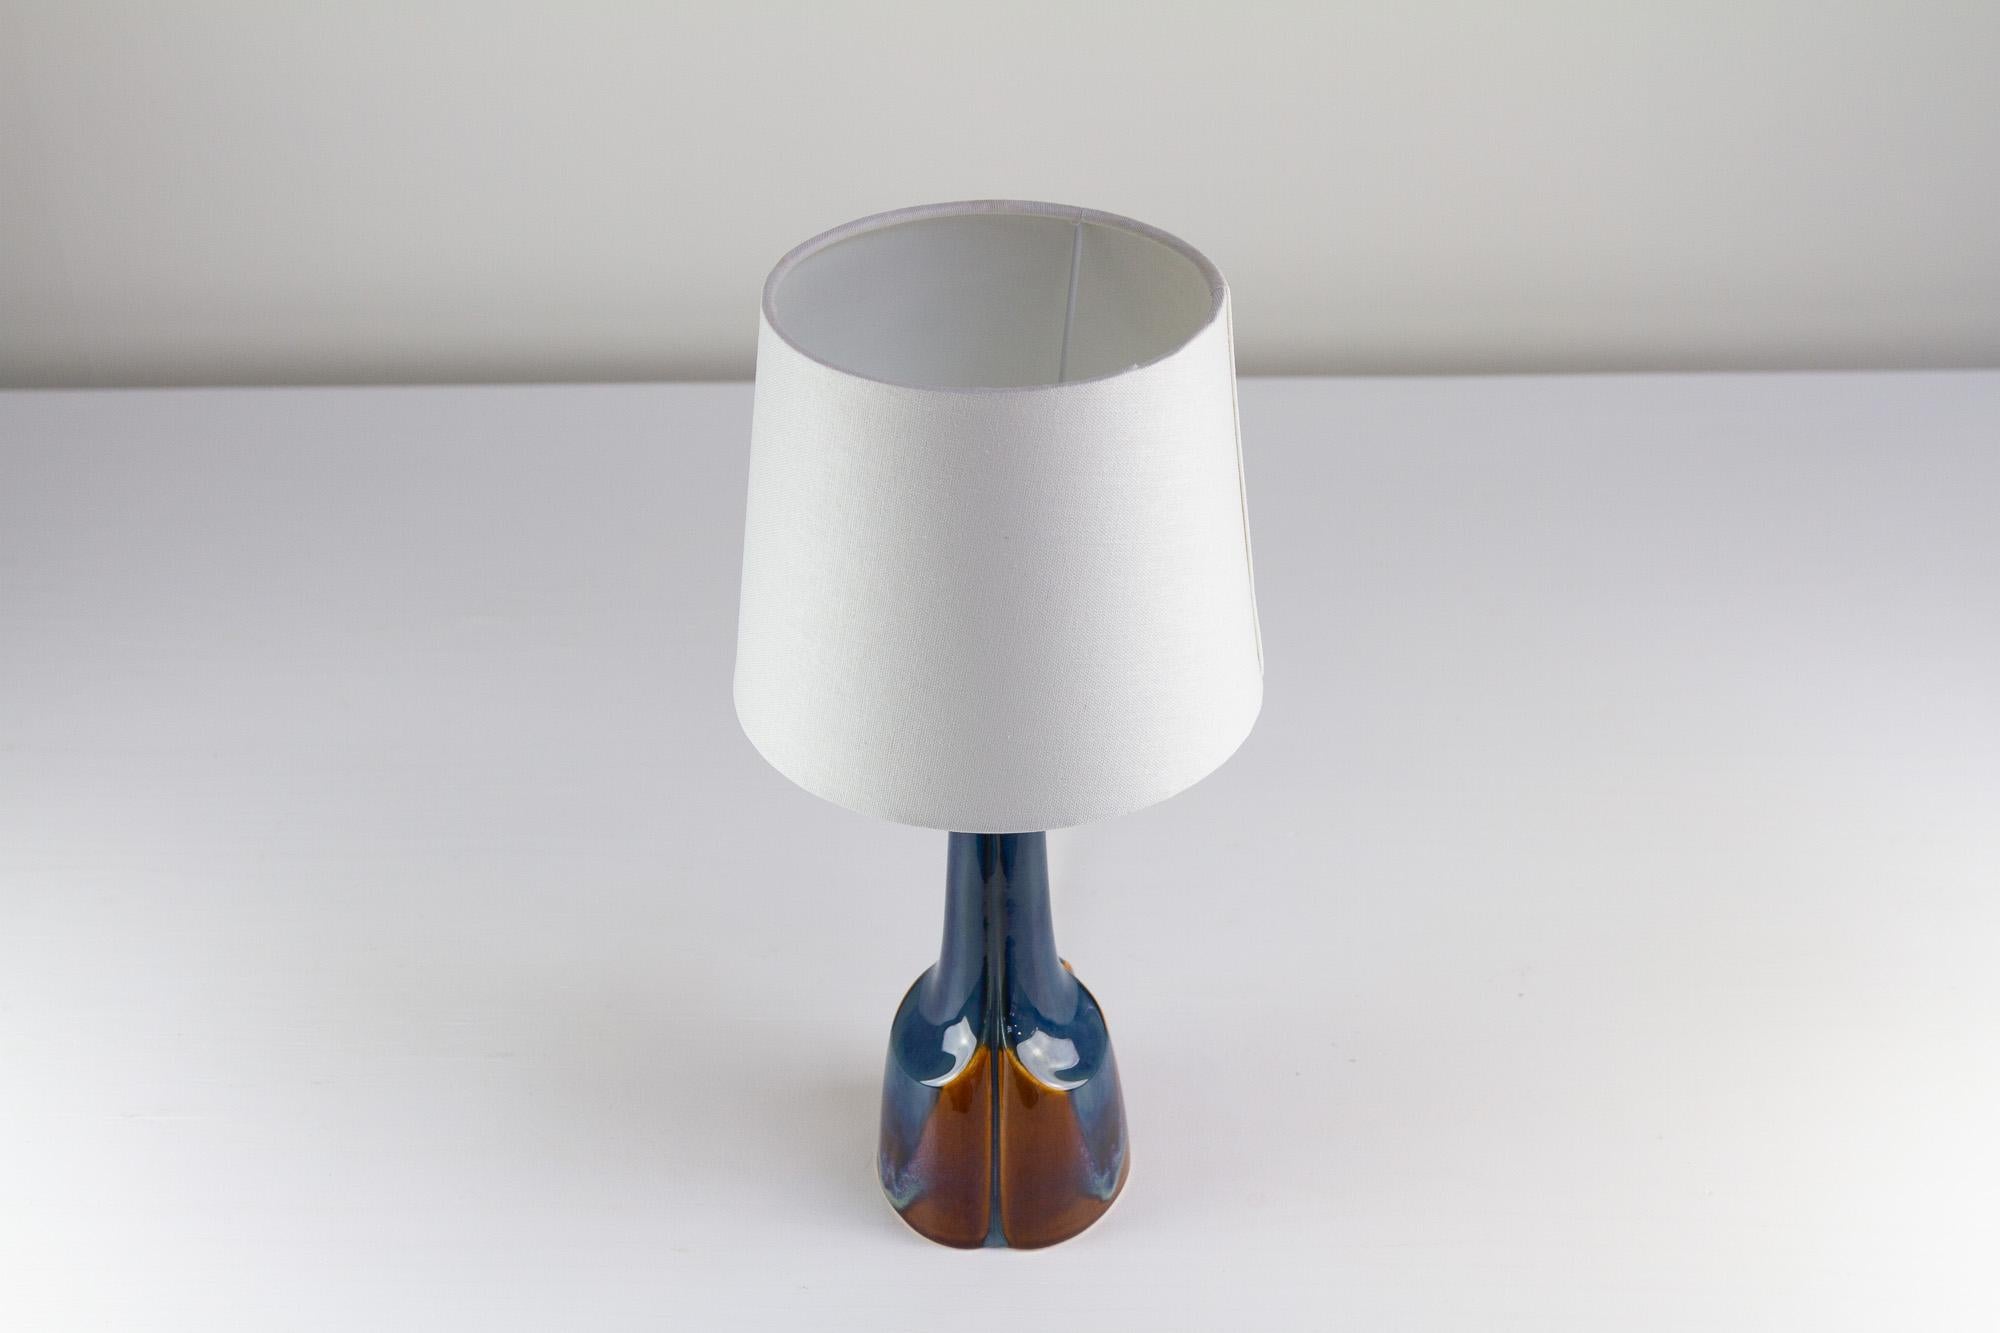 Scandinavian Modern Danish Modern Blue/Brown Ceramic Table Lamp by E. Johansen for Søholm, 1960s. For Sale